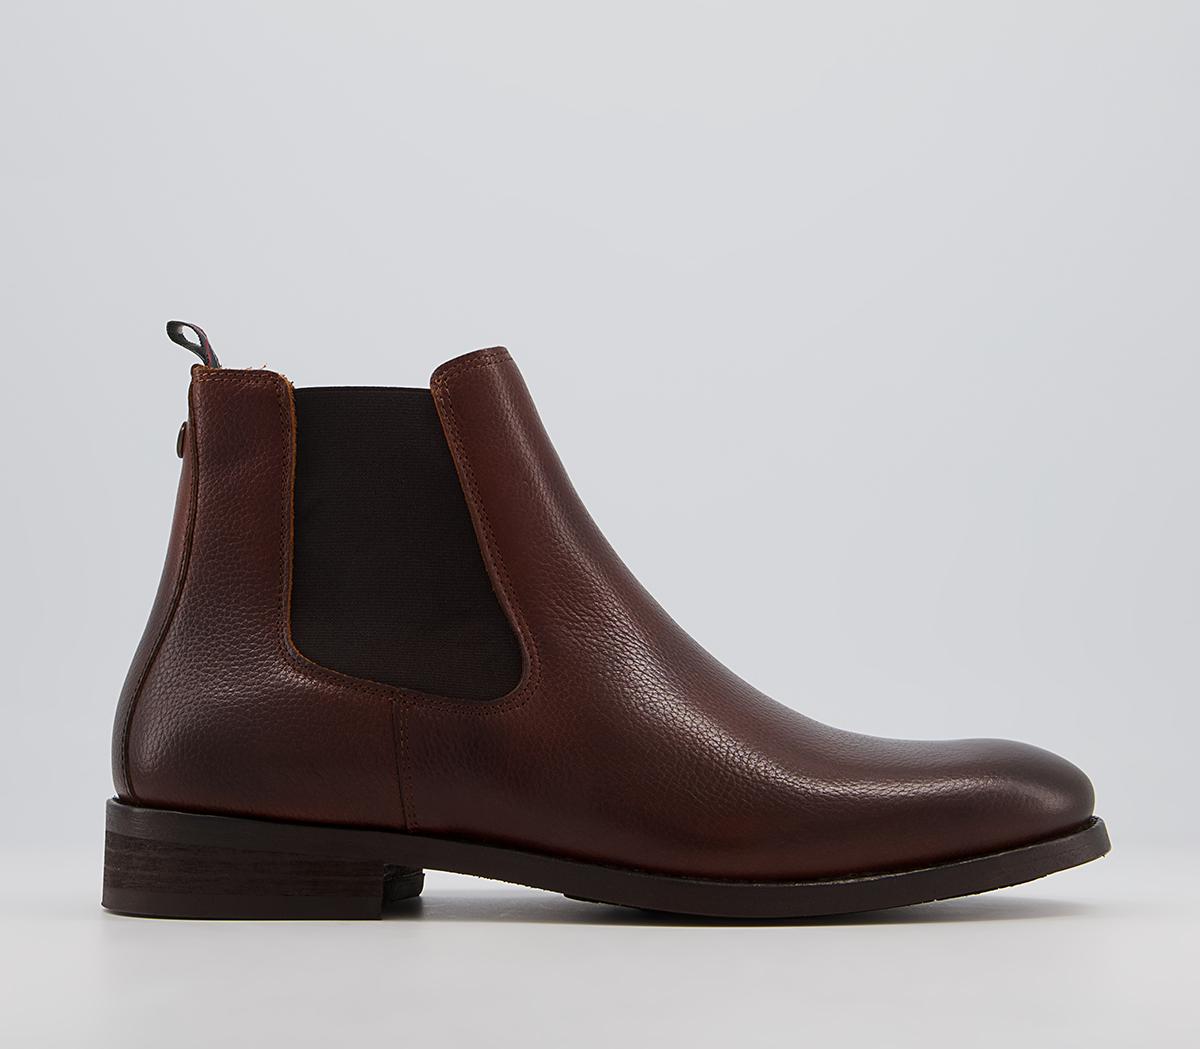 Barbour Bedlington Chelsea Boots Chestnut Grain - Men’s Boots